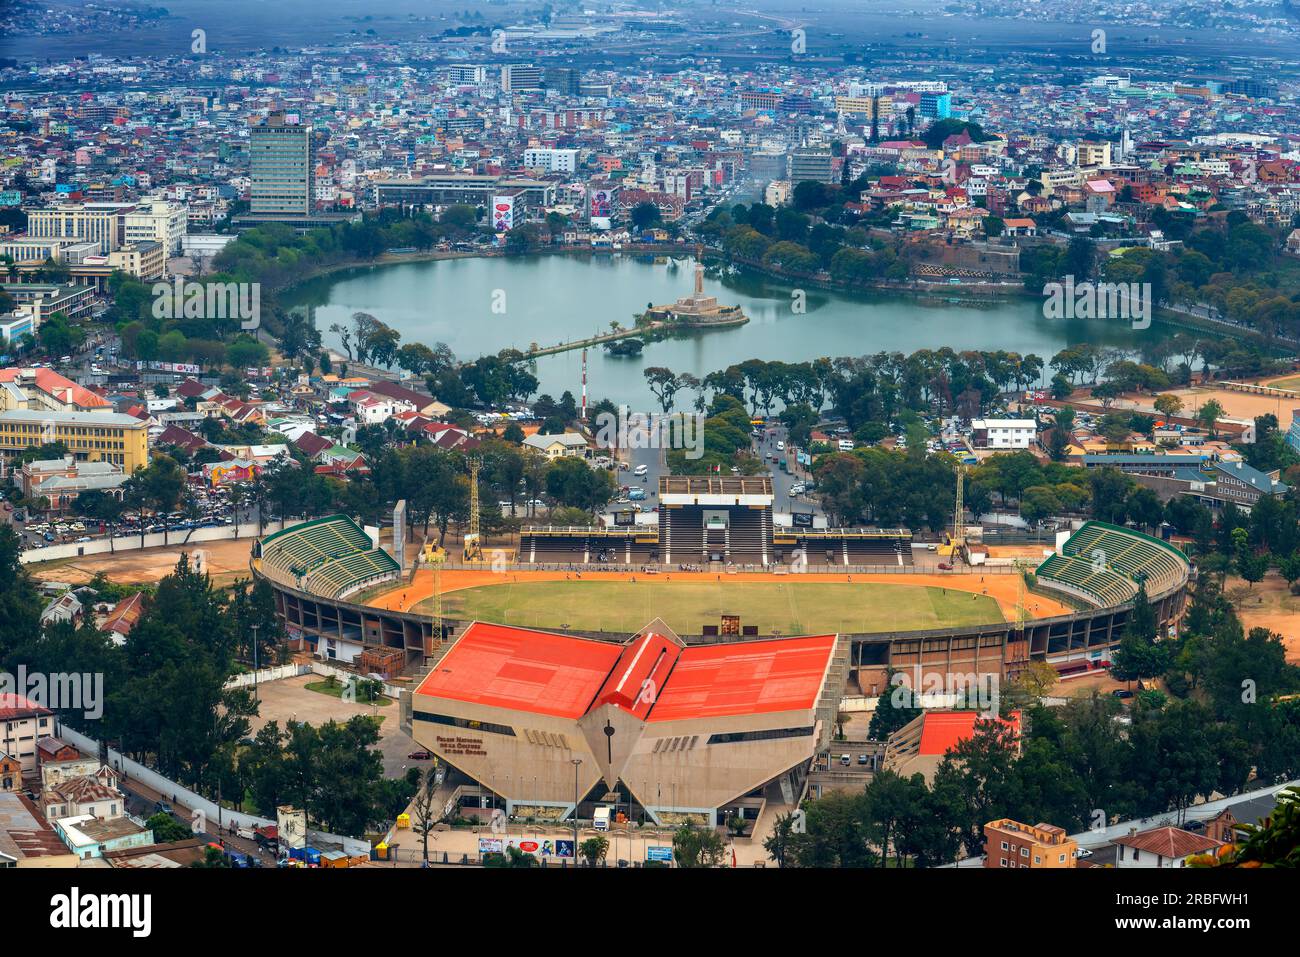 Aerial view of Antananarivo city center central lake and stadium, formerly Tananarive Antananarivo, Madagascar Stock Photo